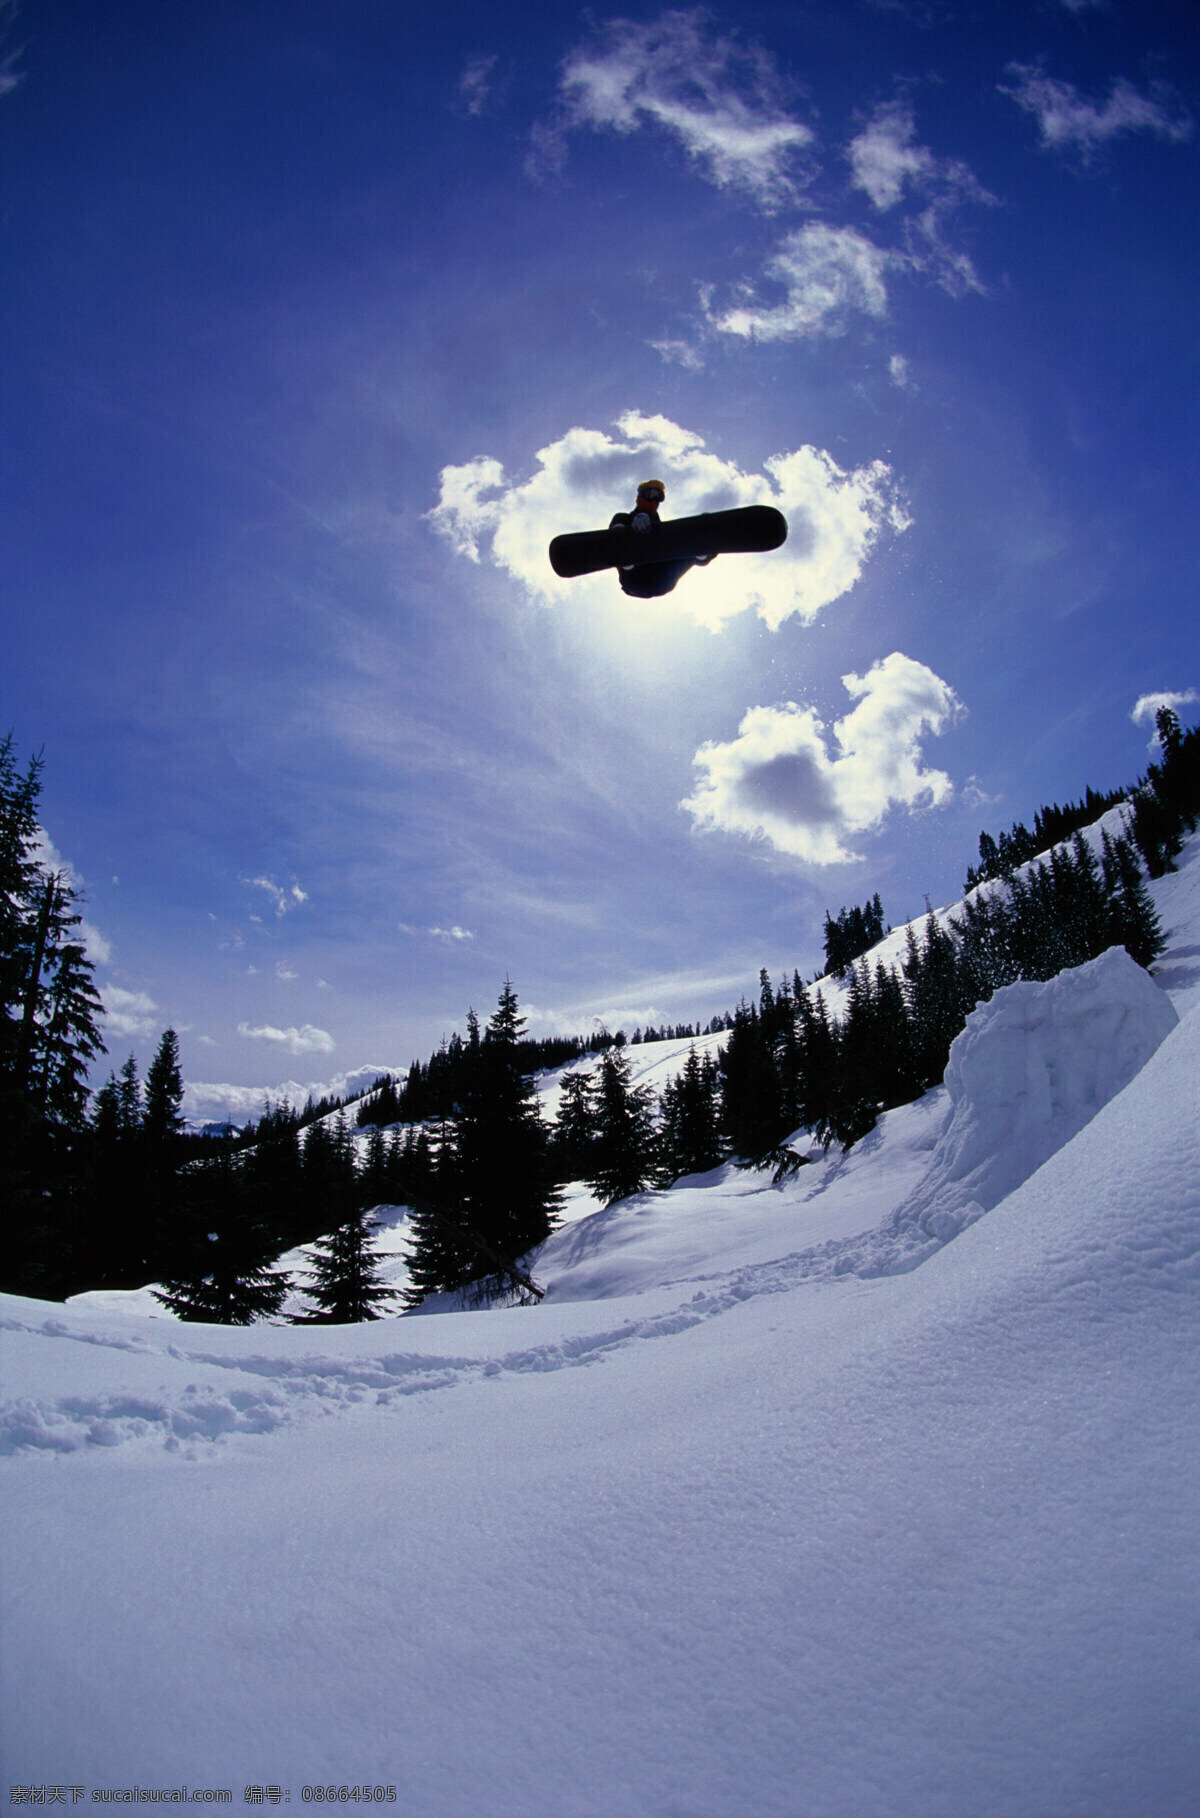 腾飞起来的人 美丽 自然 雪地 冬季 运动 人物 滑雪 飞越 飞起 跳跃 腾空 雪花 极限运动 体育运动 生活百科 蓝色